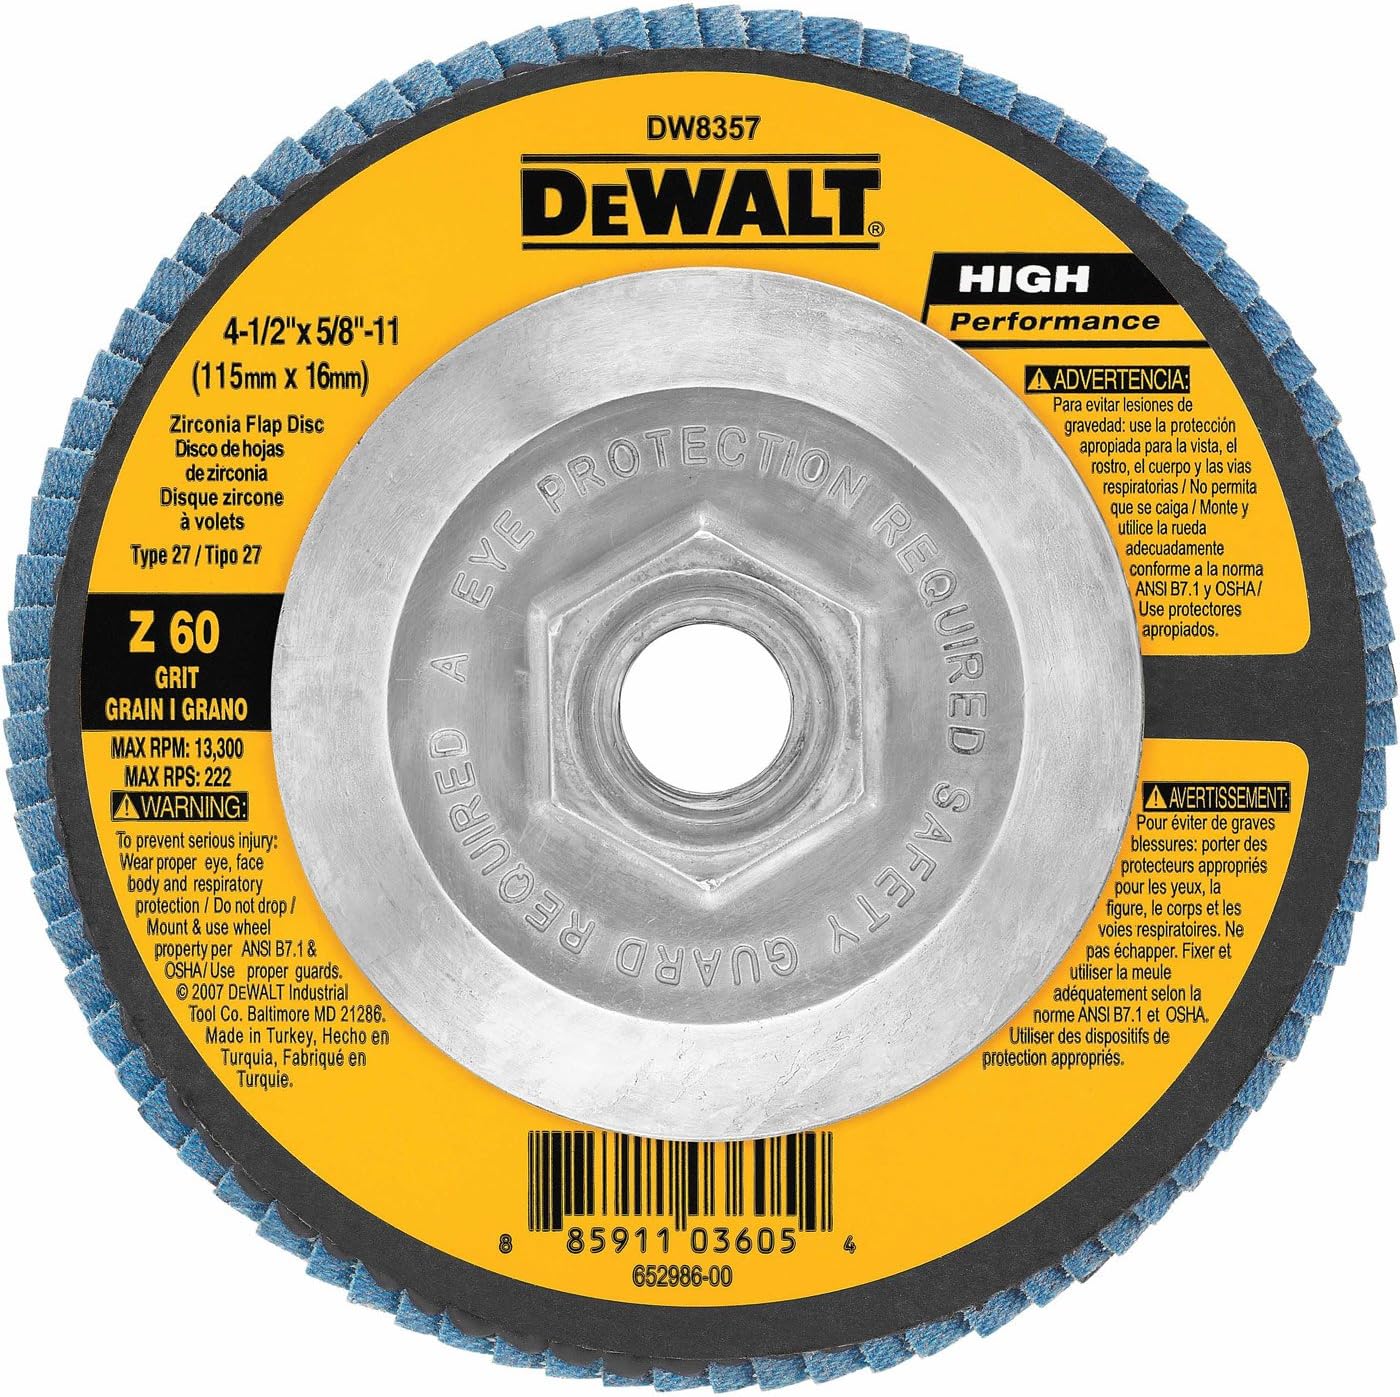 DEWALT DW8357 4-1/2-Inch by 5/8-Inch-11 60g Type 27 HP Flap Disc